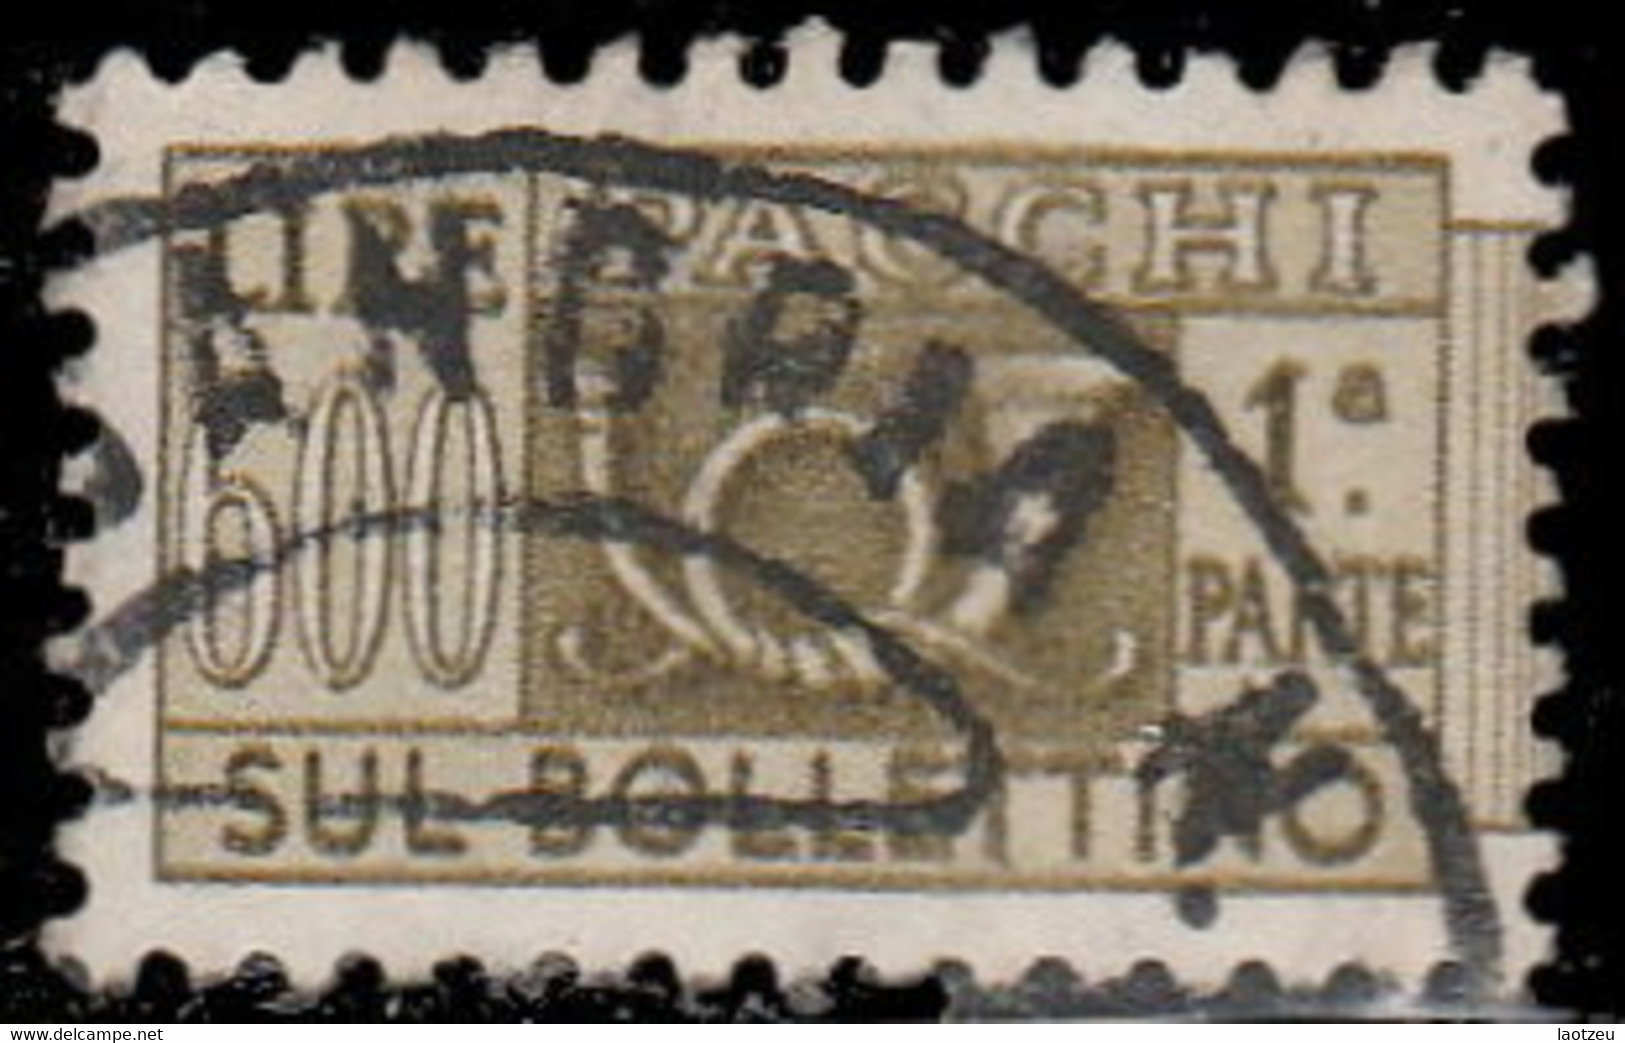 Italie Colis Postaux 1956. ~ CP 88 - 600 L. Cor De Chasse - Paquetes Postales